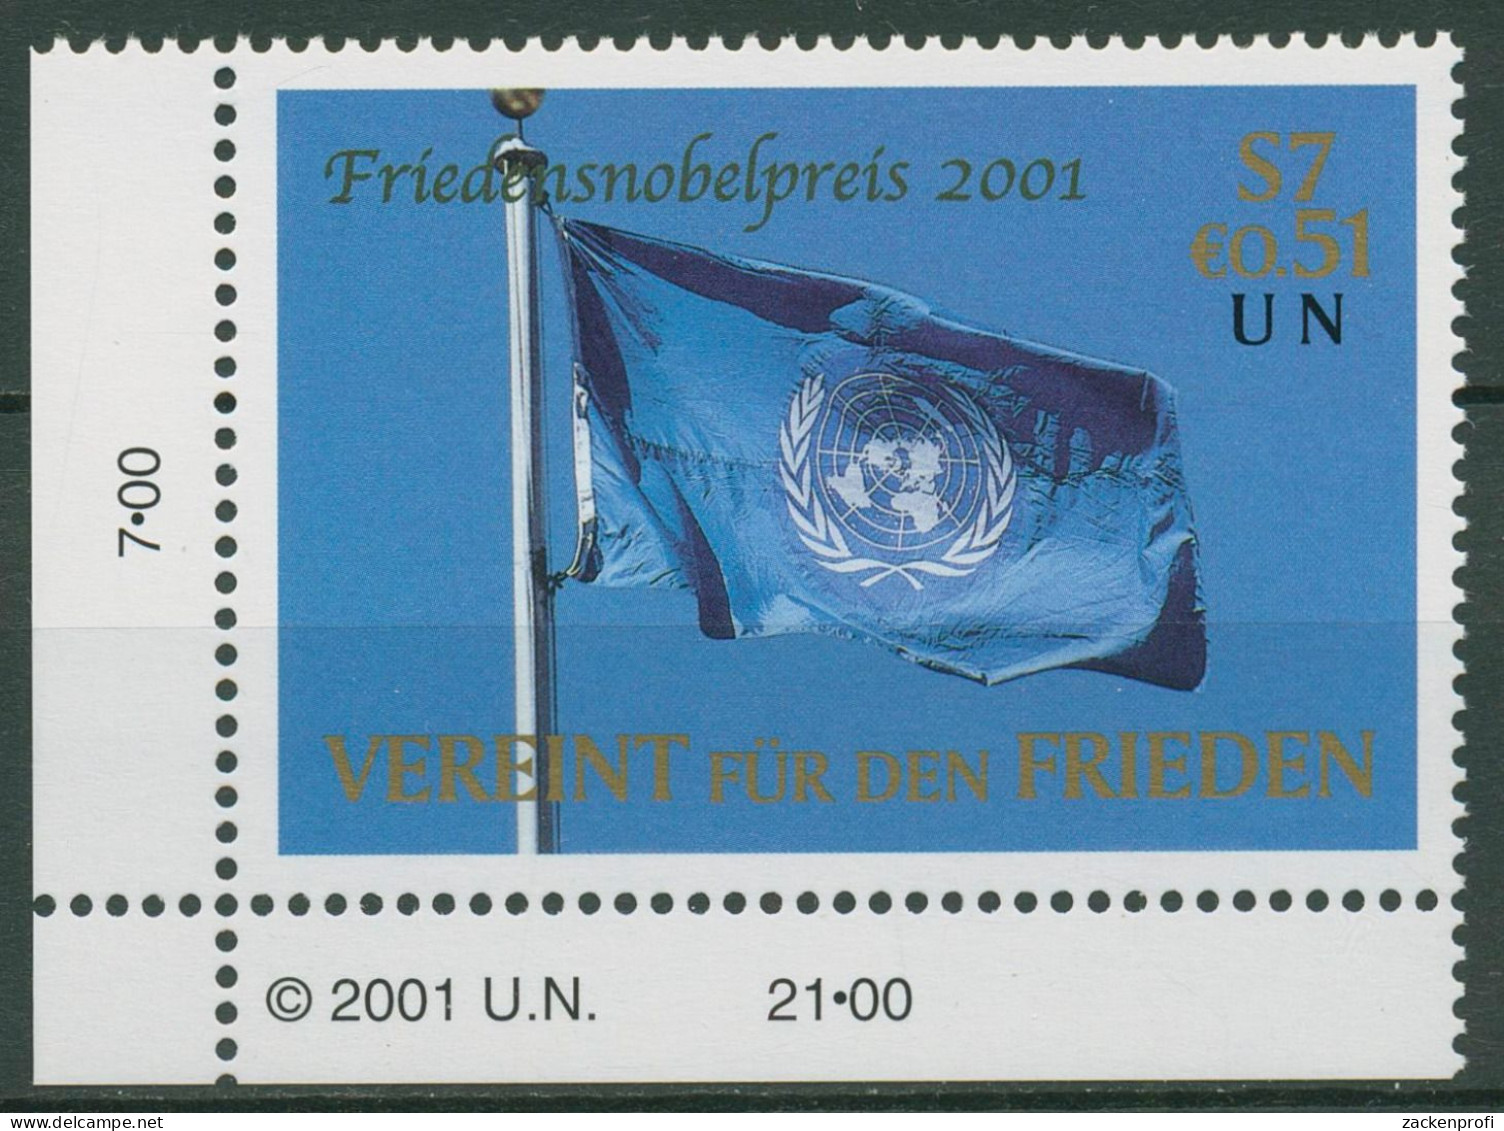 UNO Wien 2001 Friedensnobelpreis Kofi Annan Flagge 350 Ecke Postfrisch - Nuovi